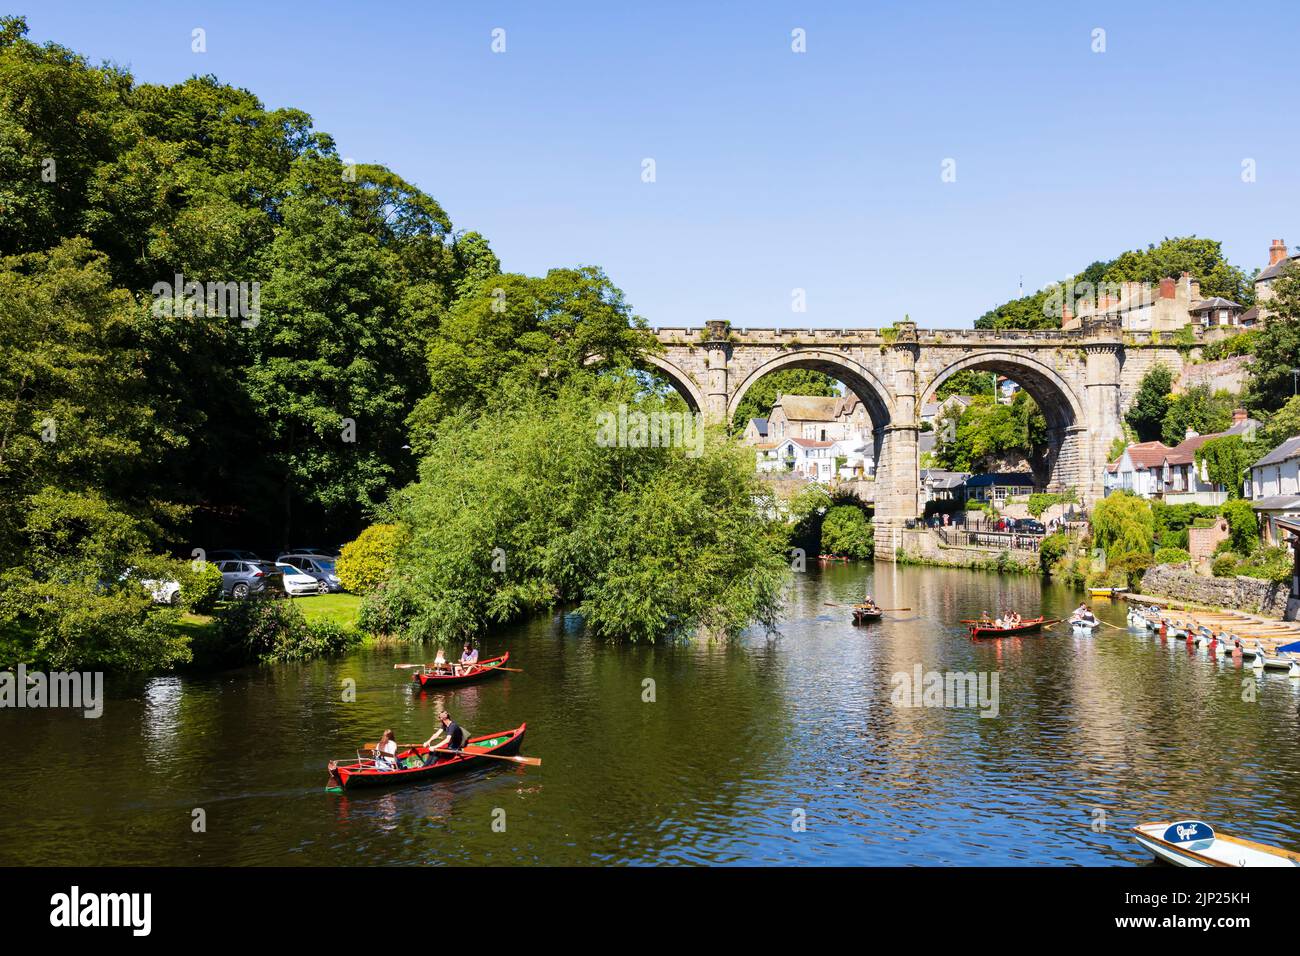 El viaducto del ferrocarril sobre el río Nidd, Knaresborough, North Yorkshire, Inglaterra. Día caluroso de verano con la gente en los barcos en el río. Foto de stock